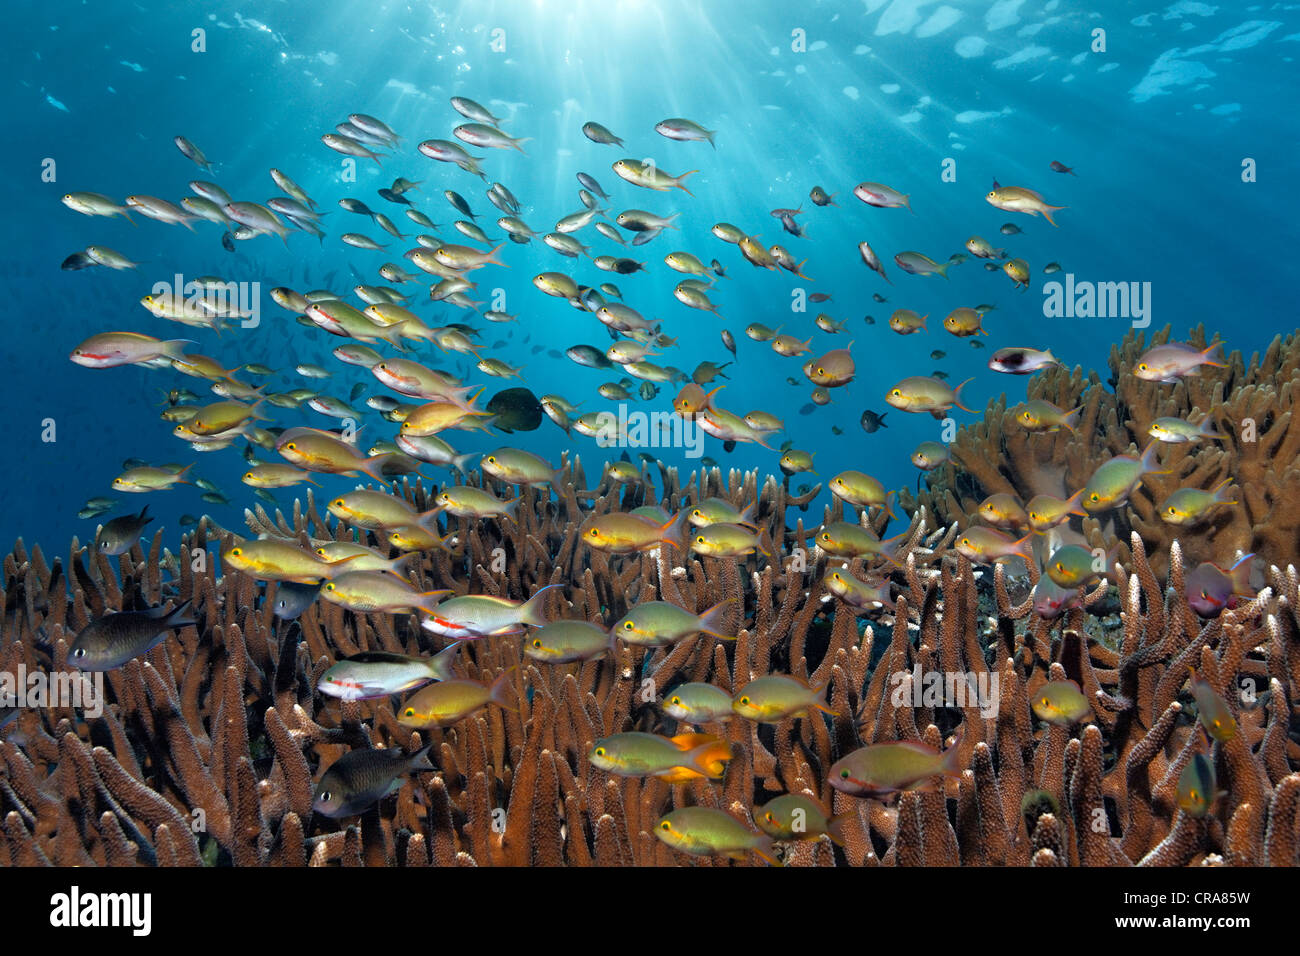 Banc de mer Goldies (Pseudanthias mortoni) nager au-dessus de coraux durs (Acropora), Grande Barrière de Corail Banque D'Images